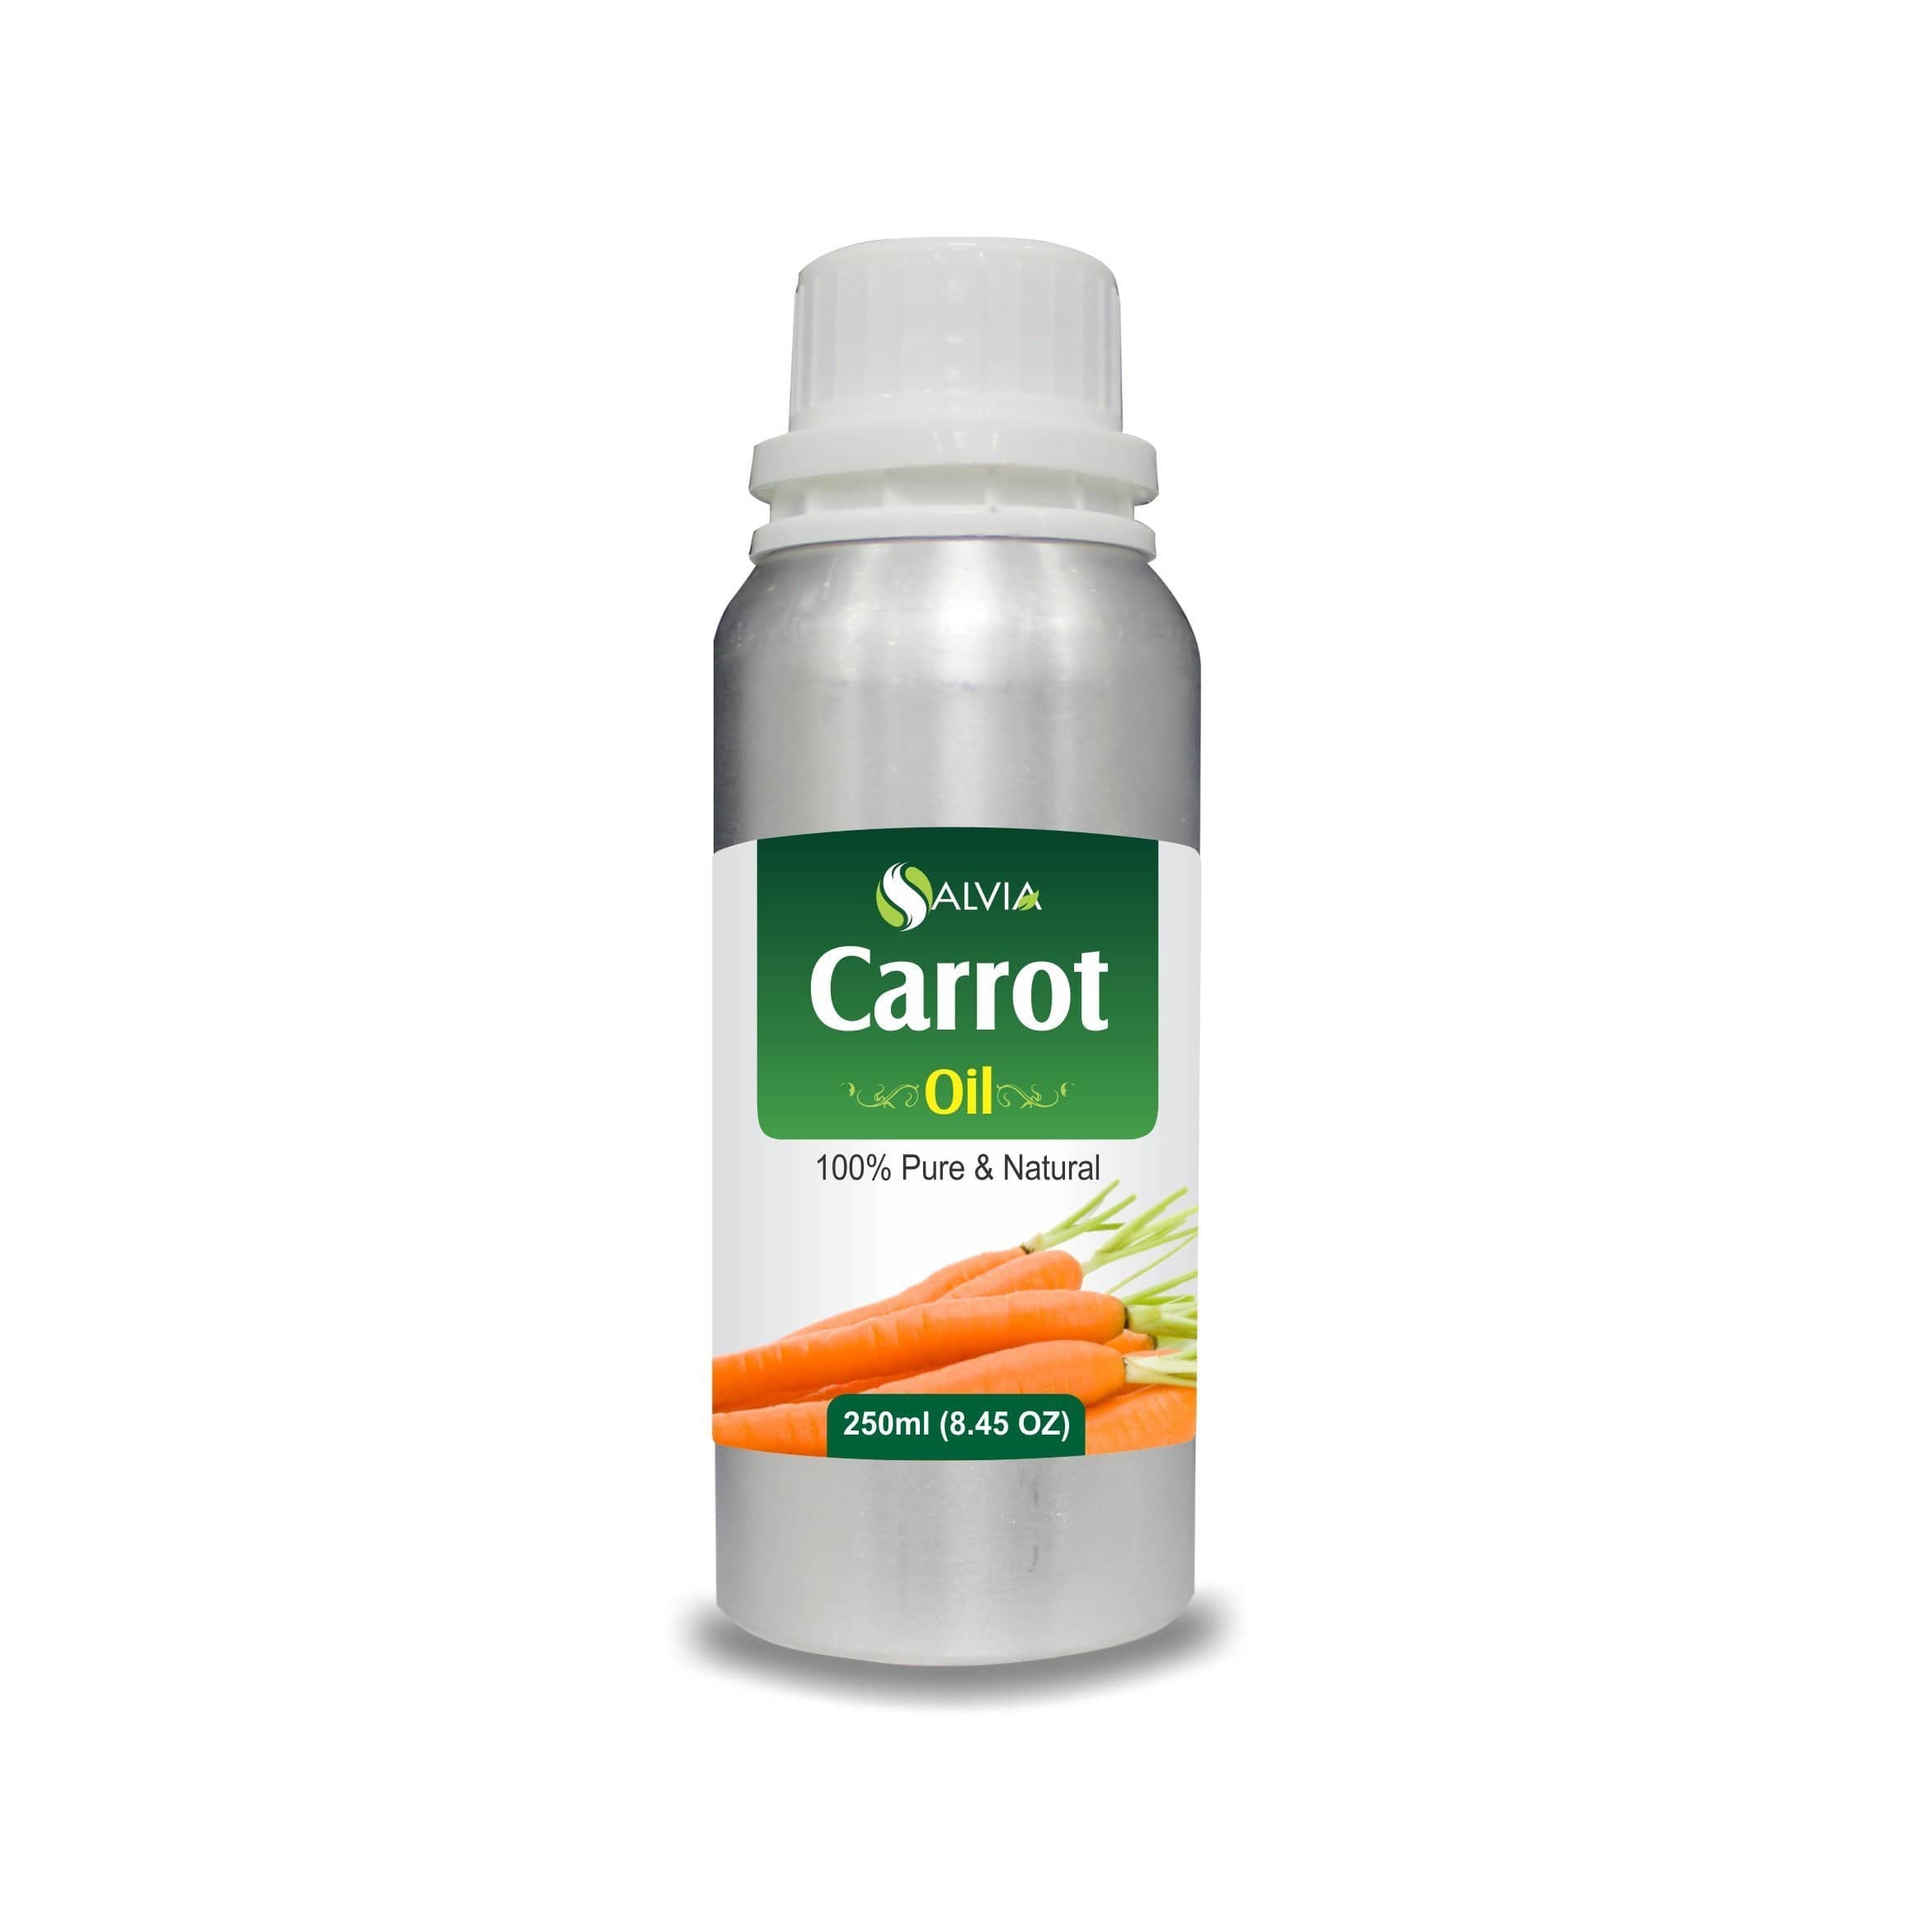 carrot oil for baby skin